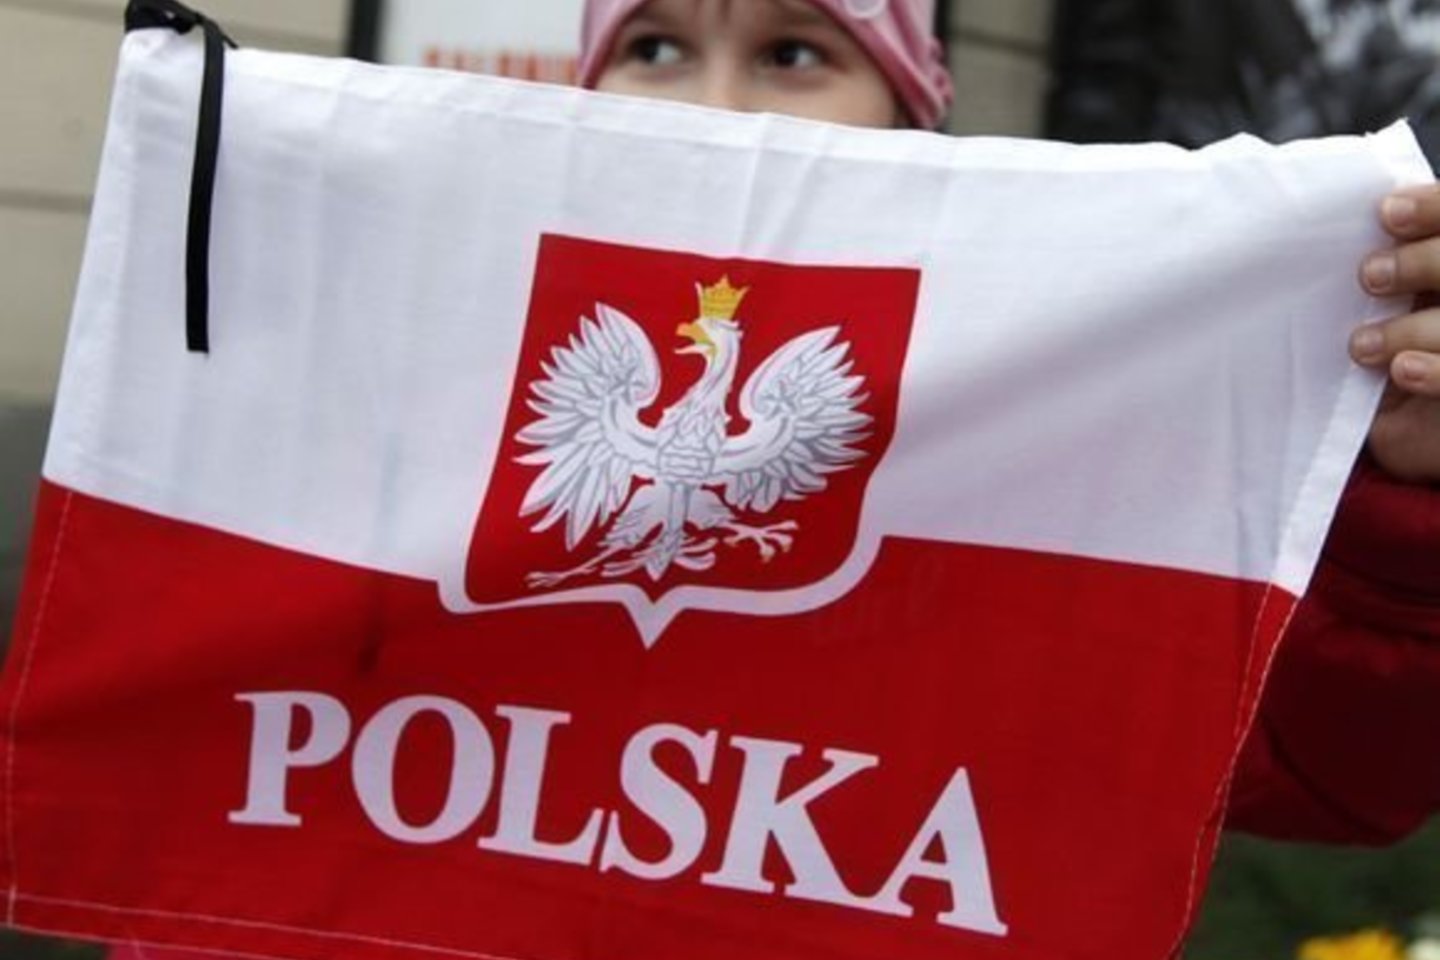 Lenkijos ir Lietuvos santykiai gali papulti į kryžkelę: su naujaus valdančiaisiais bus ir naudos, ir bėdos.<br>Reuters/Scanpix nuotr.